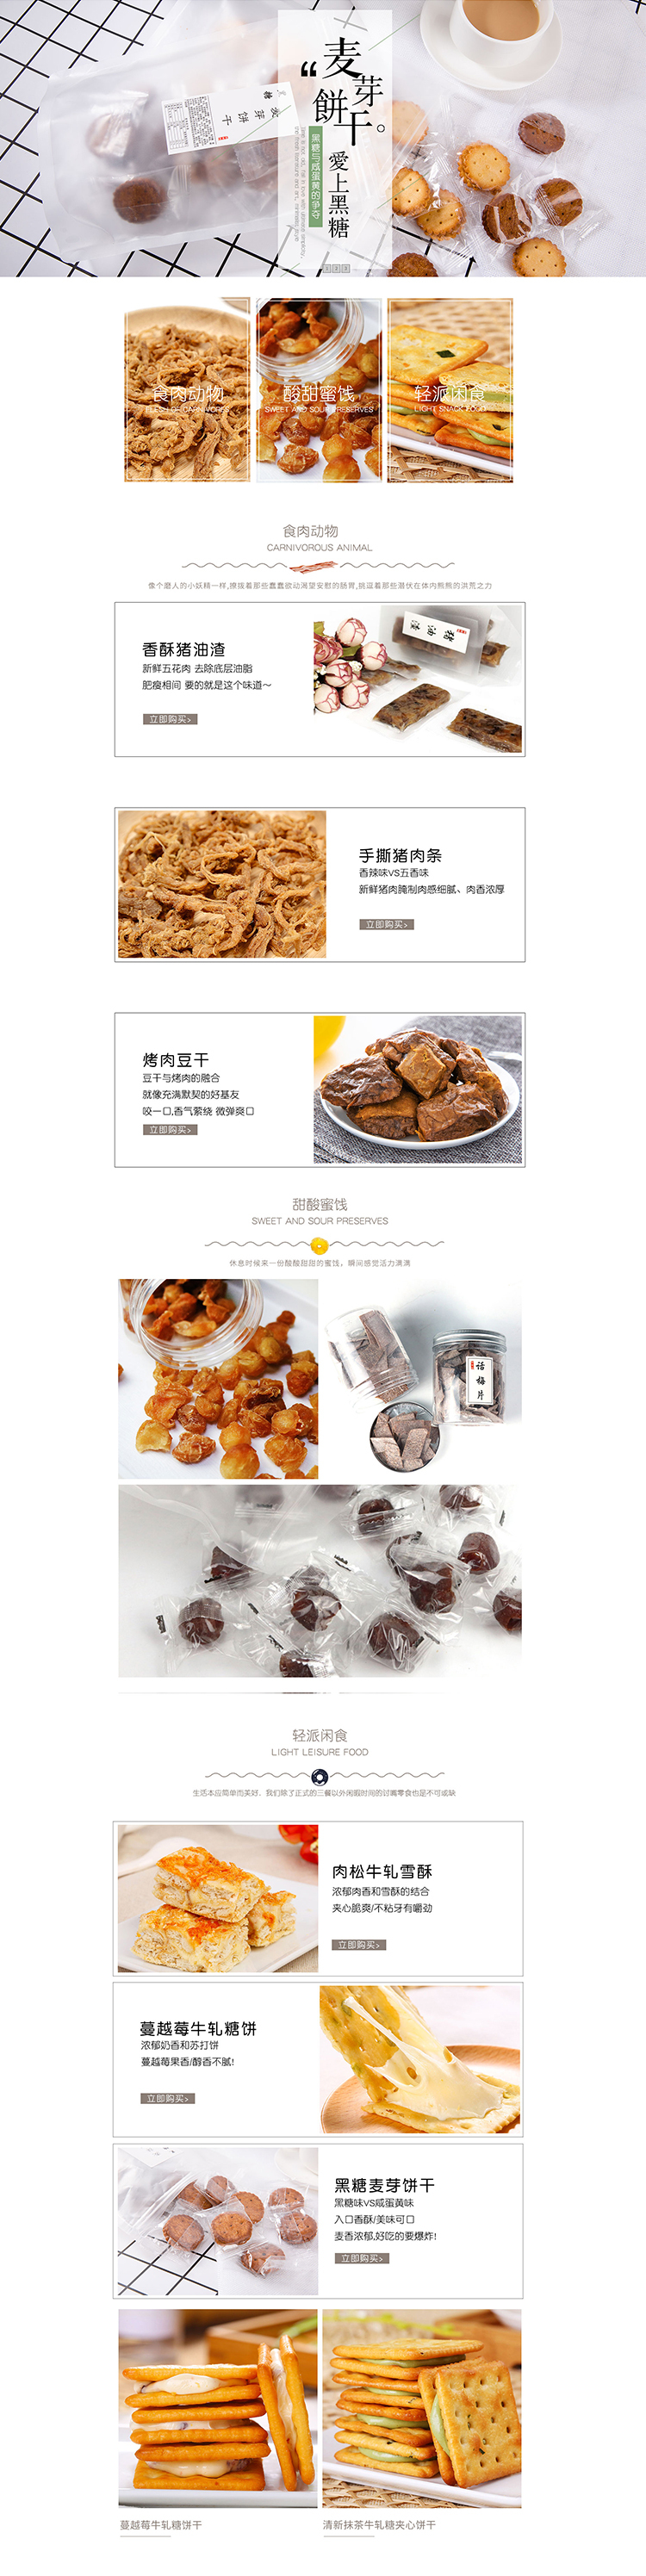 淘宝美工小酥饼时尚简约零食淘宝网首页设计作品